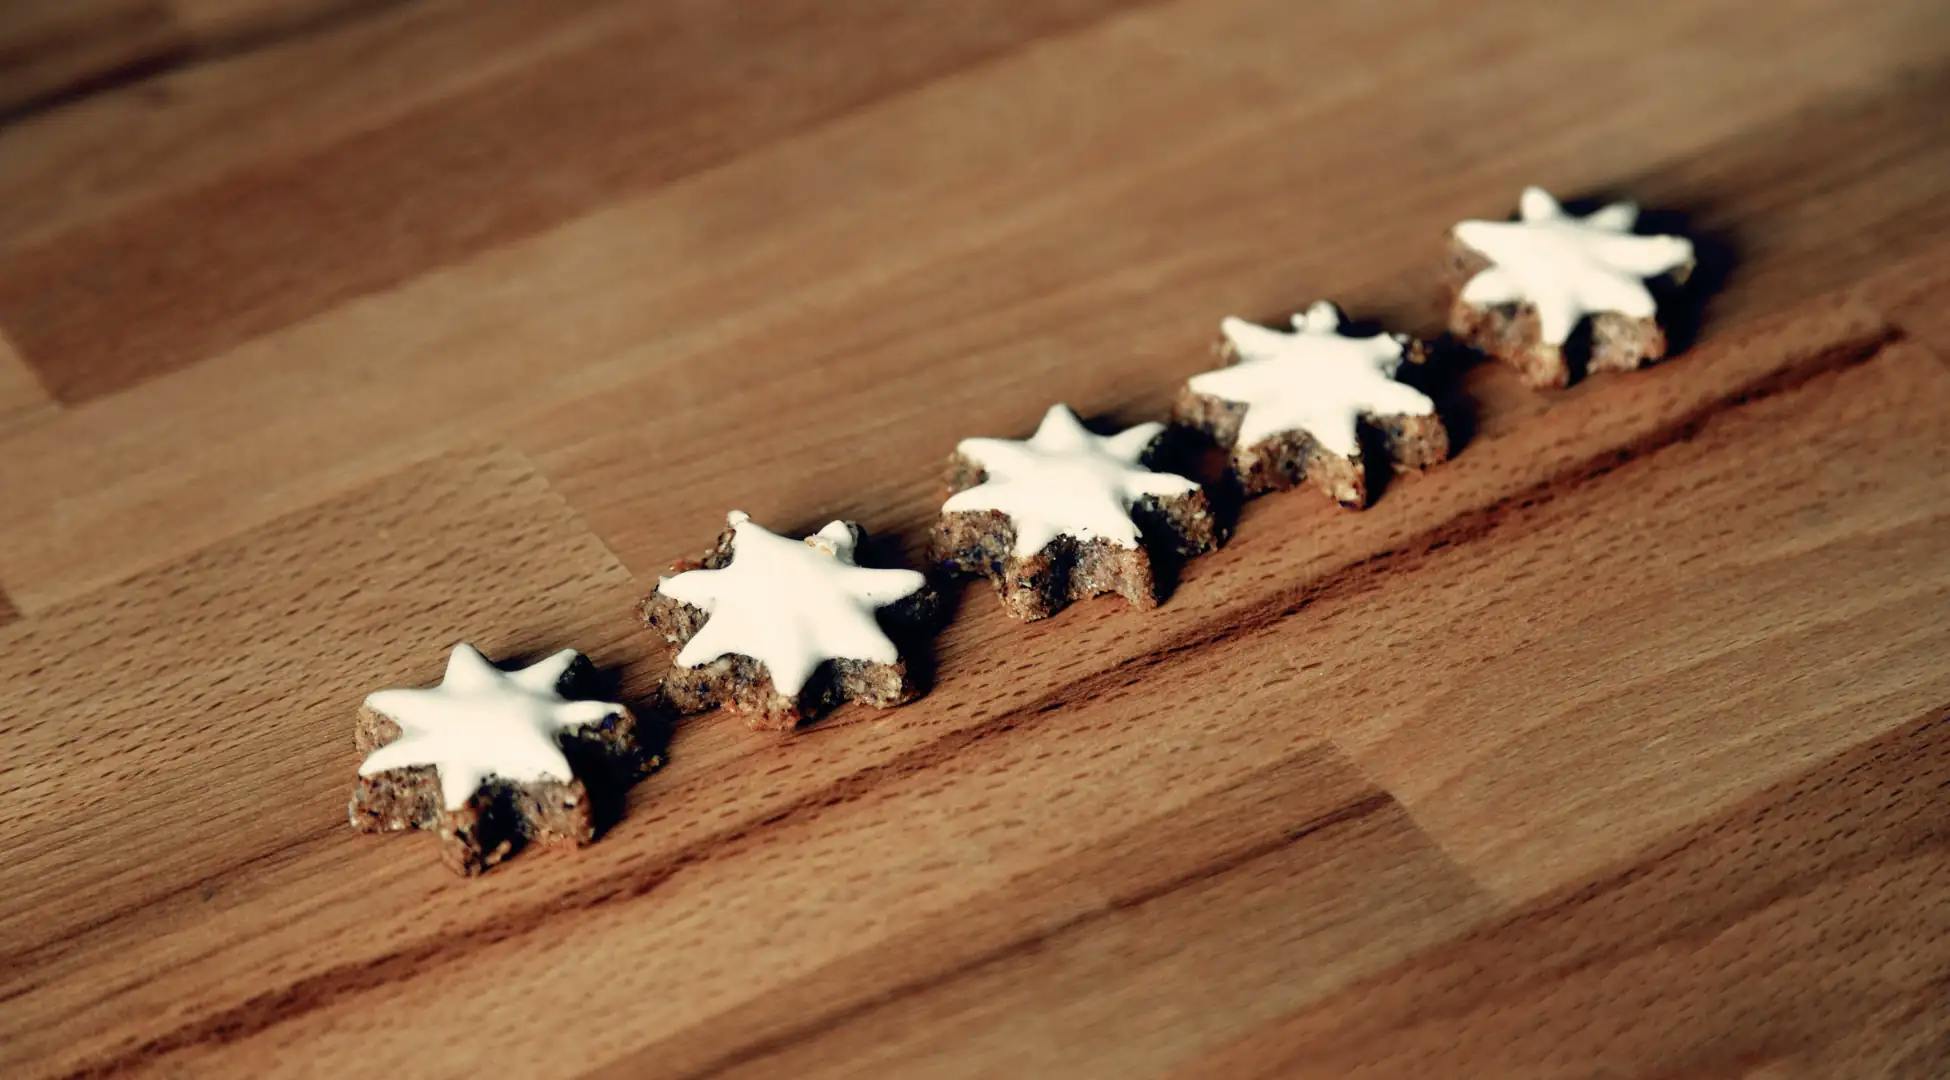 Biscuits en forme d'étoile, métaphore des préférences personnelles prises en compte par Pop'in.